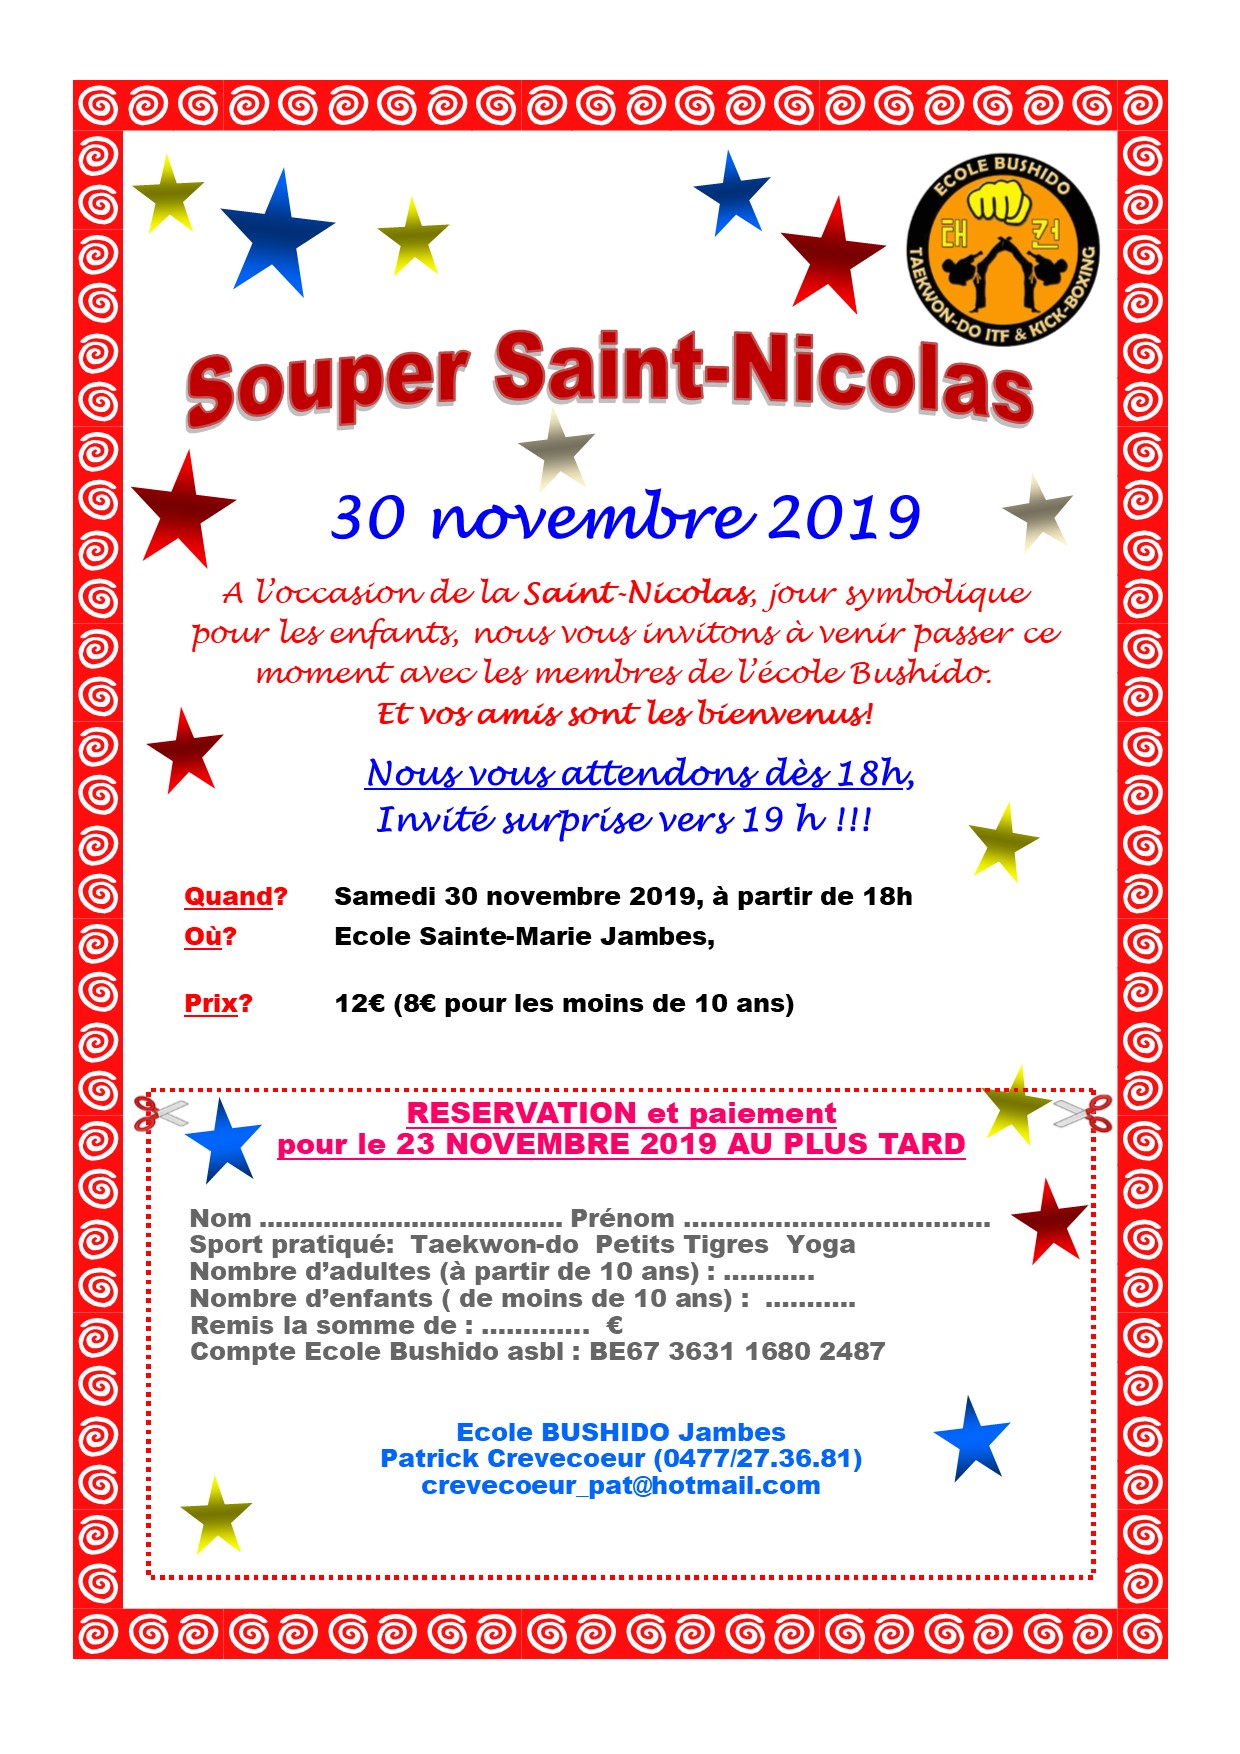 Souper saint-nicolas 2019.jpg